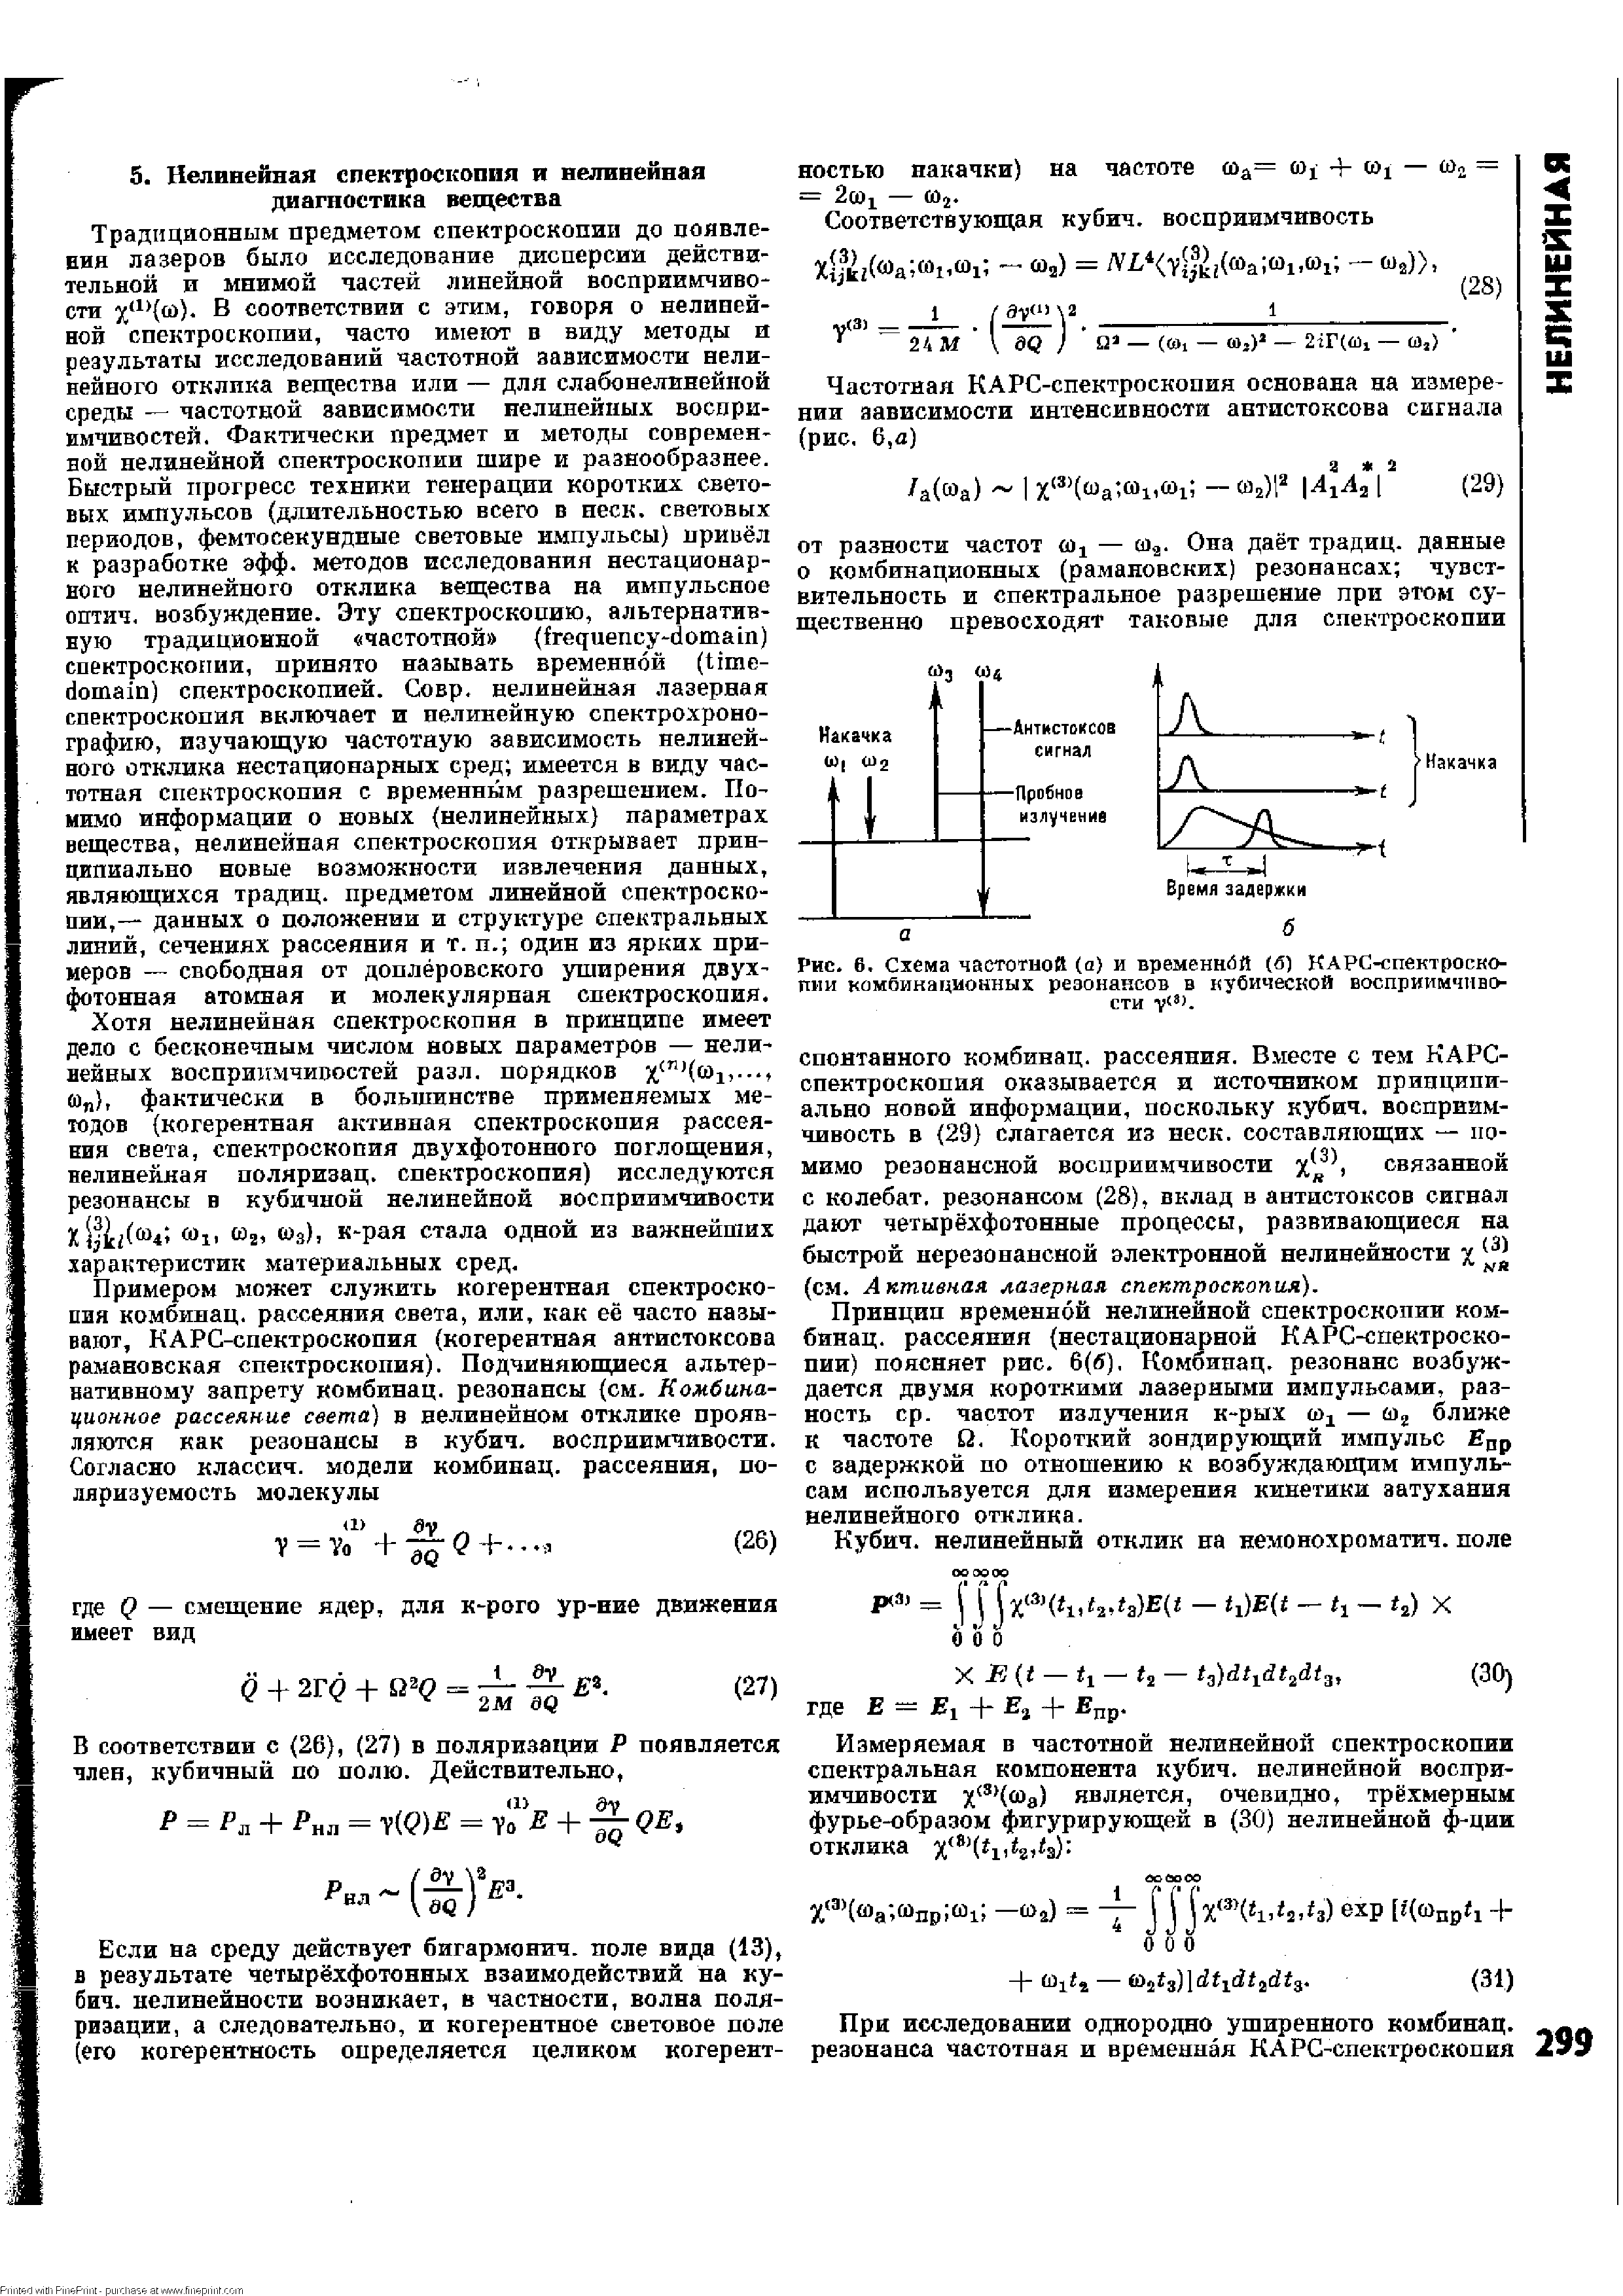 Рис. 6. Схема частотной (а) и временной (б) КАРС-спектроско-пии комбинационных резонансов в кубической восприимчивости
